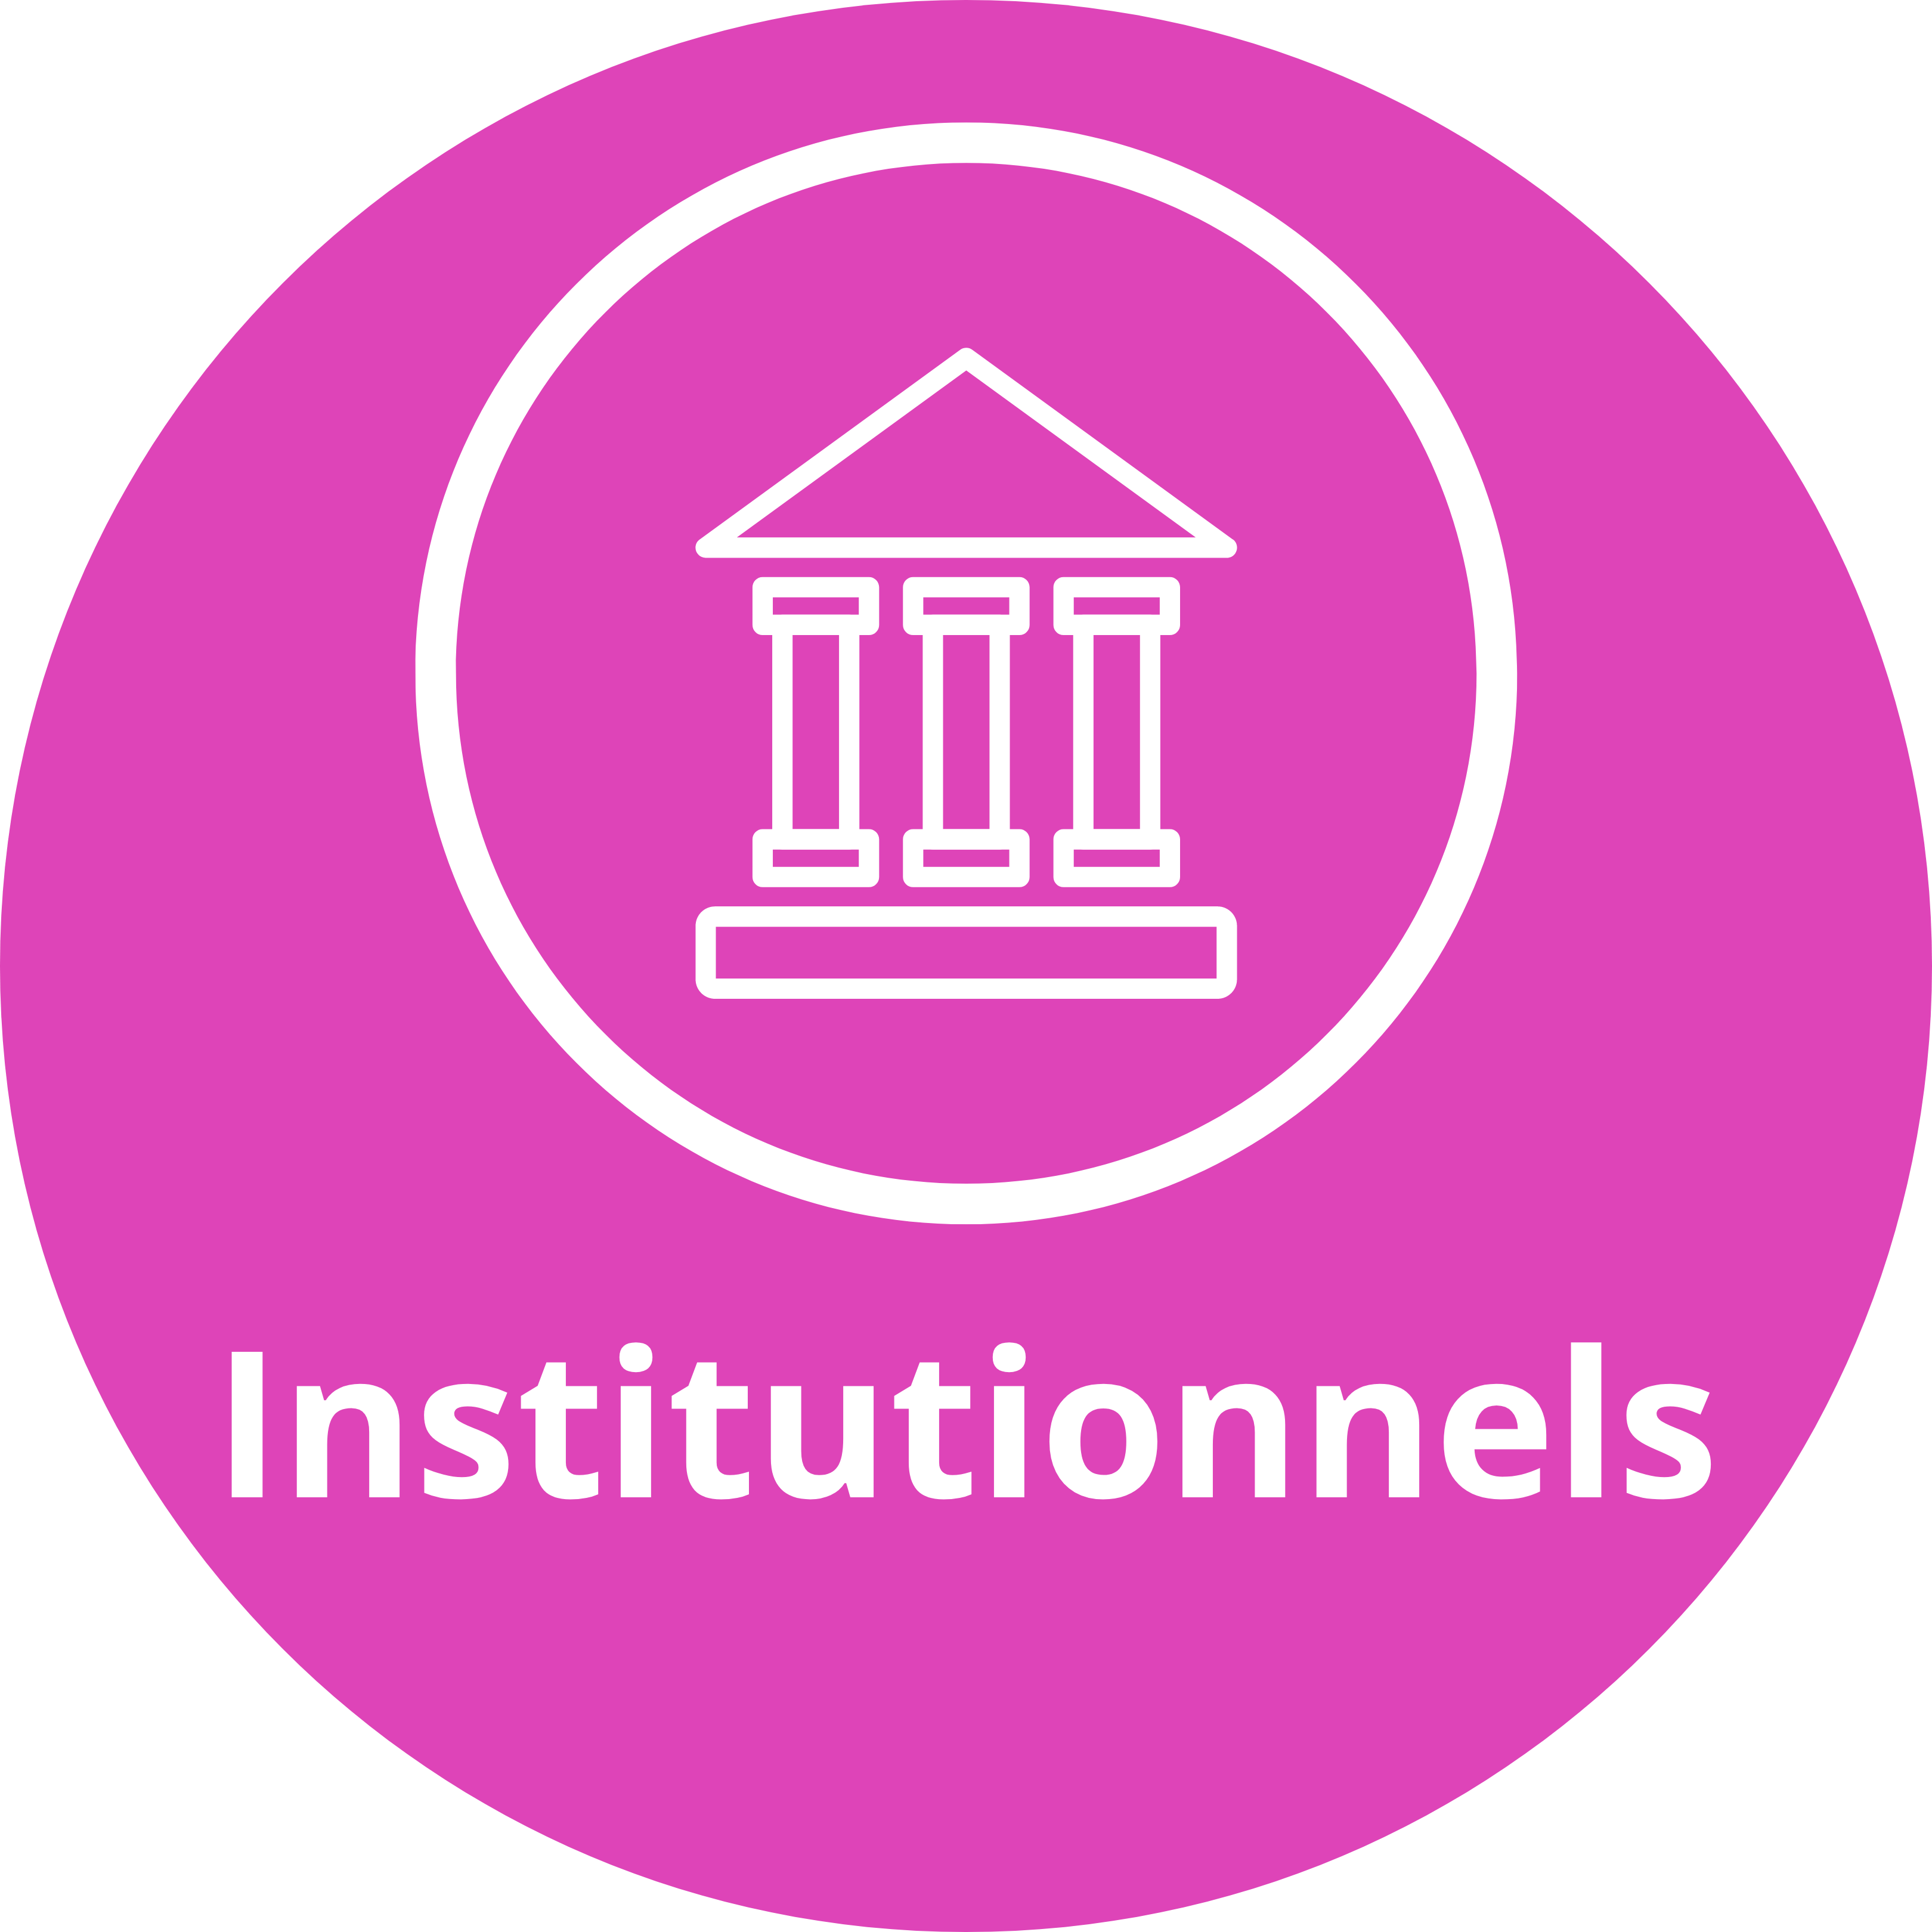 Icone institutionnel